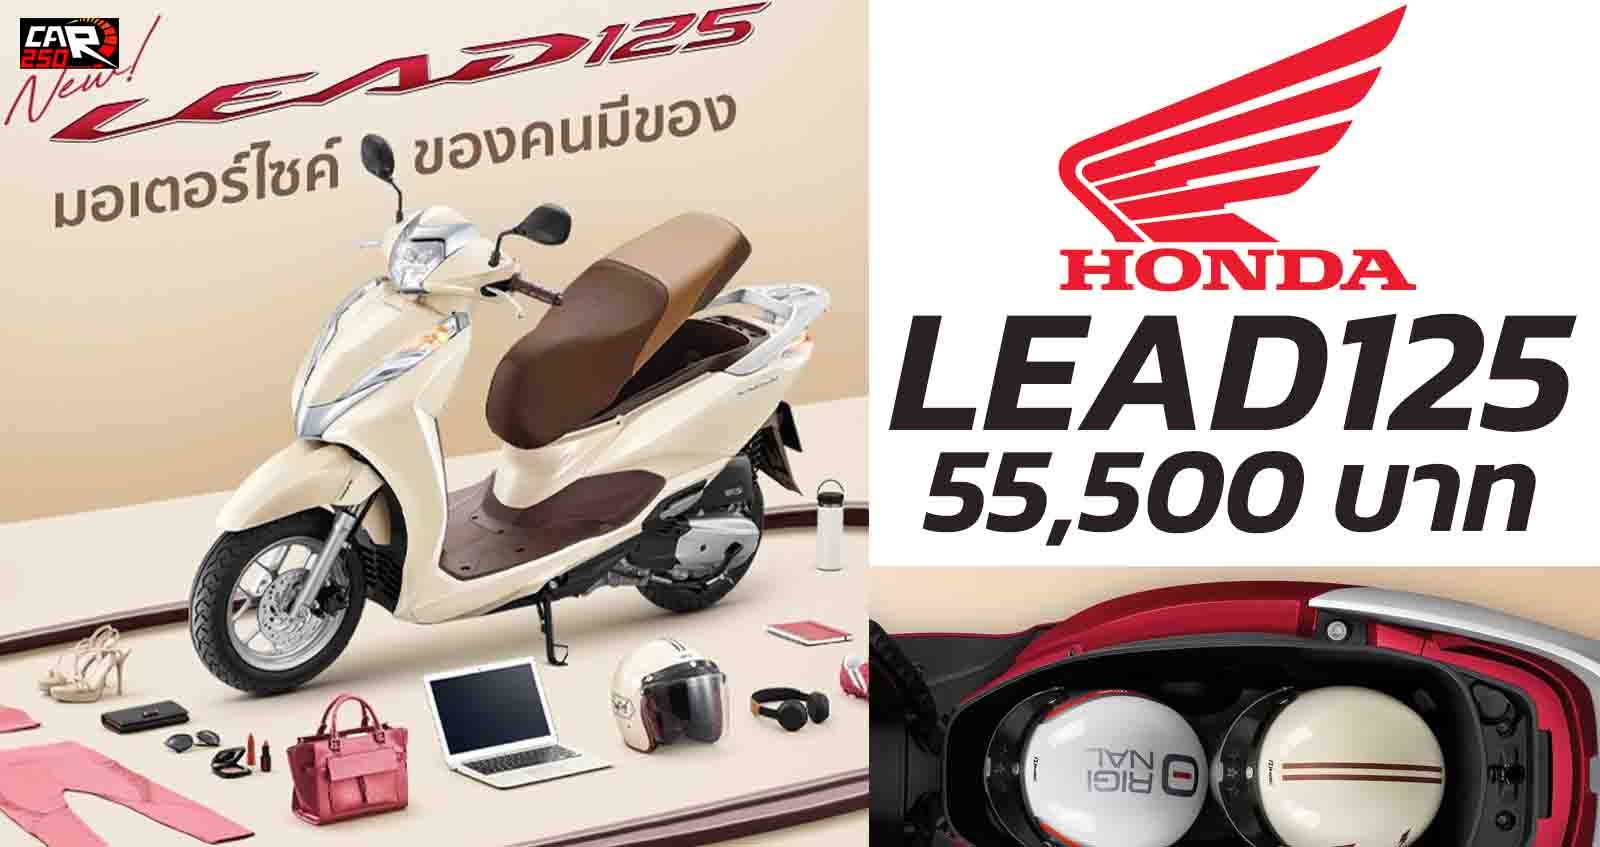 HONDA Lead 125 ราคา 55,500 บาท ในไทย